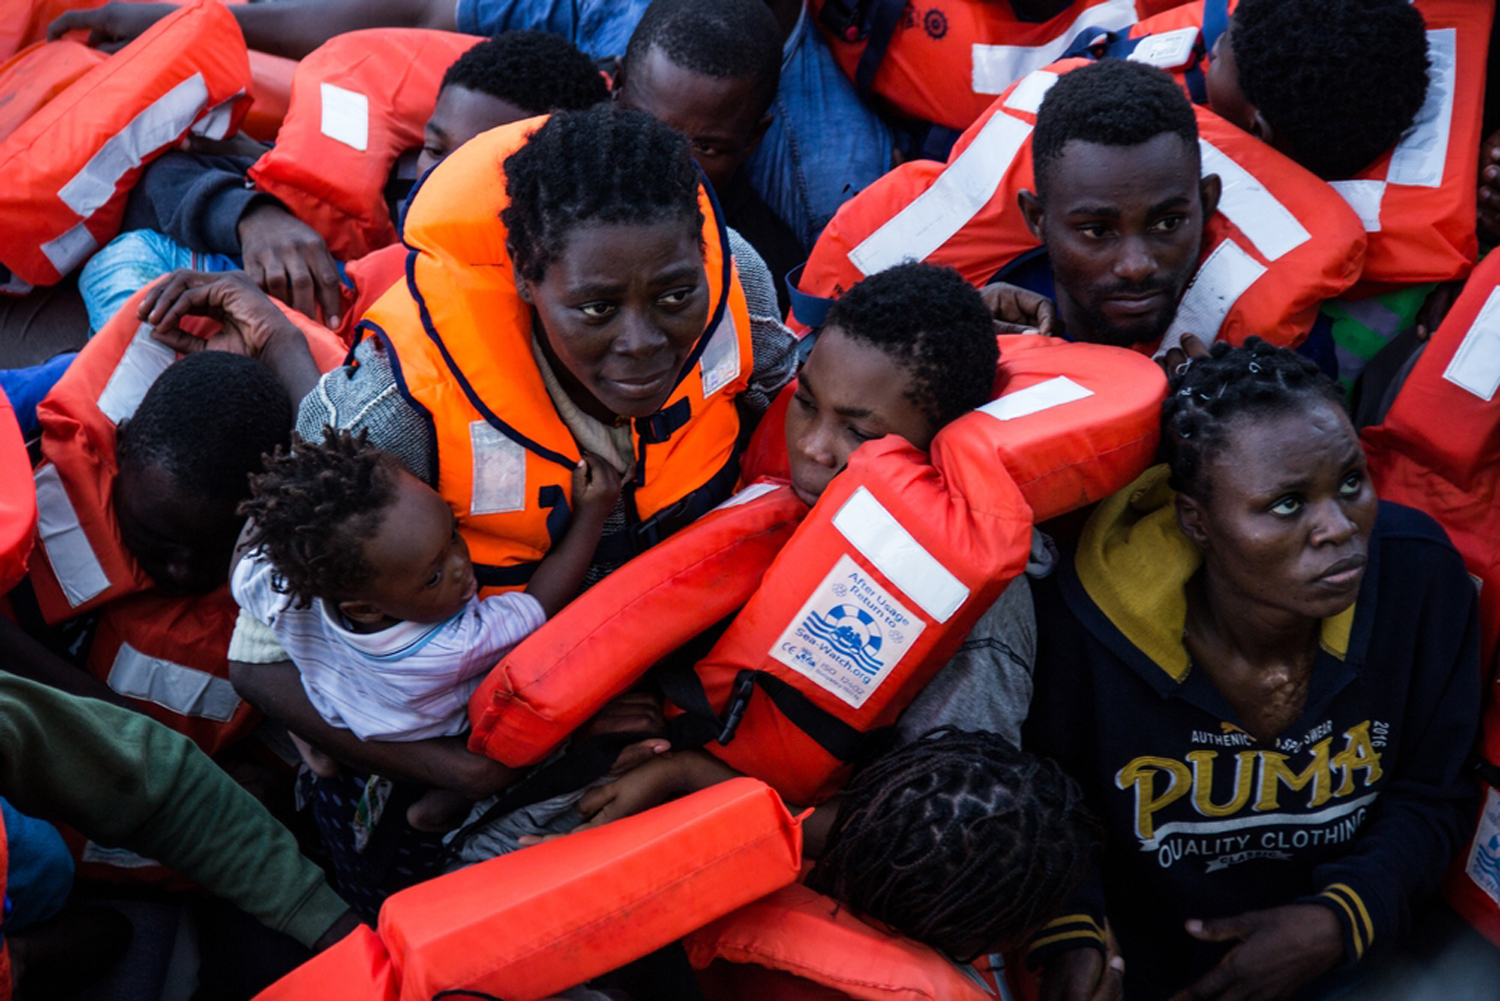 Άντρες, γυναίκες και παιδιά στοιβάζονται σε ακόμη χειρότερες βάρκες. © Borja Ruiz Rodriguez/MSF